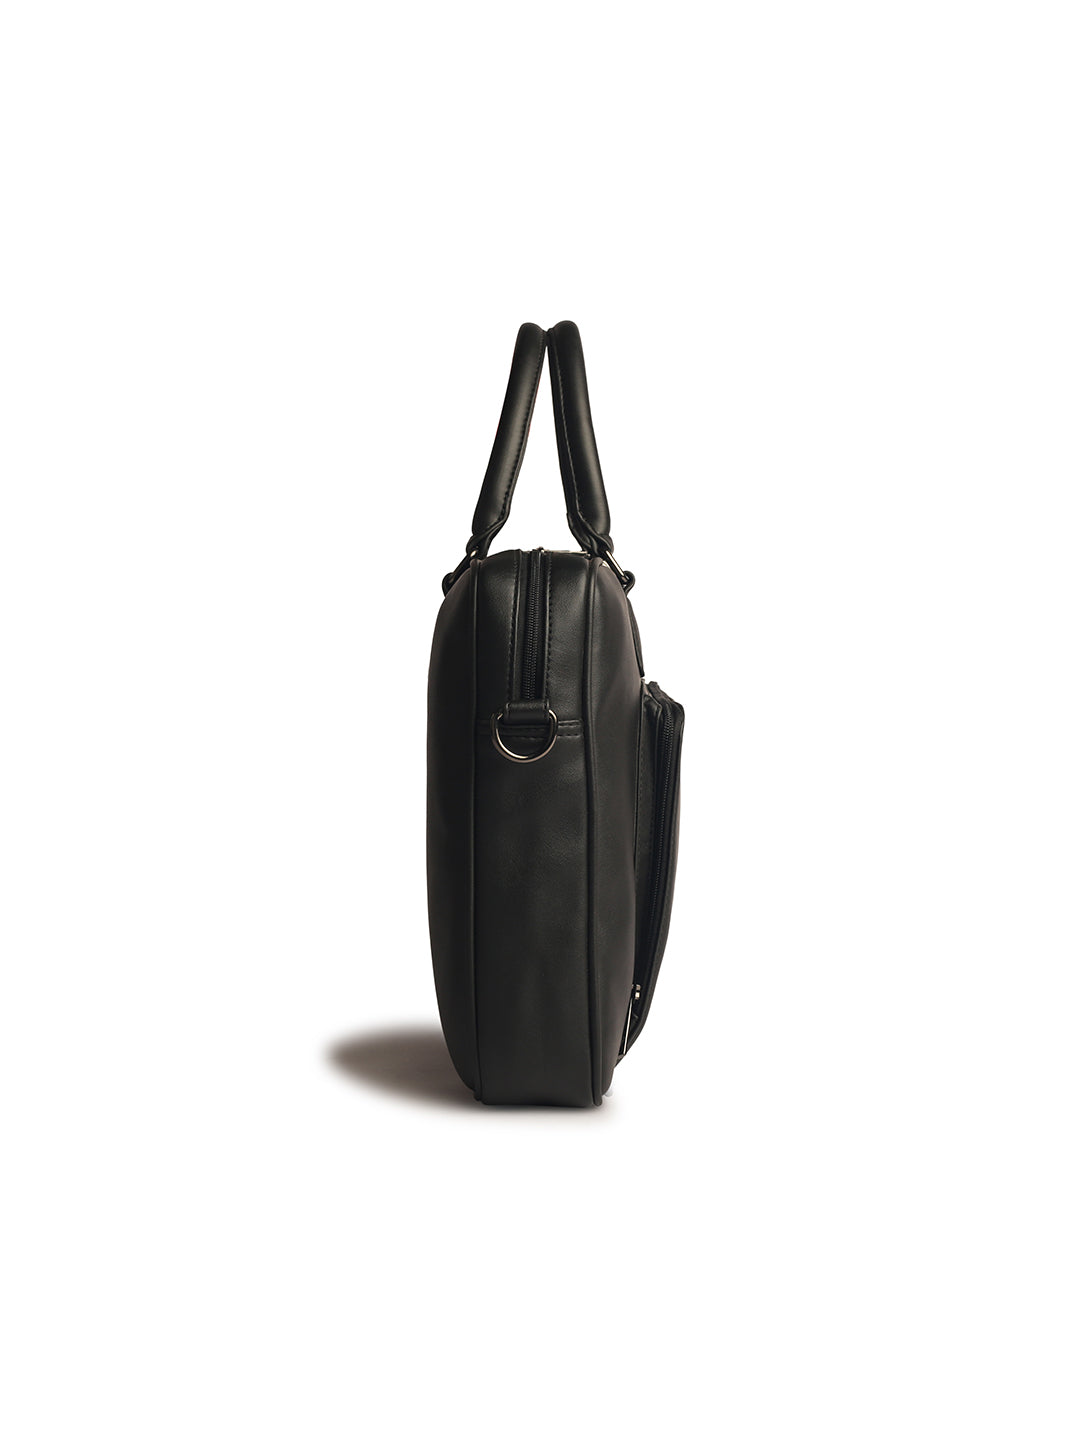 Gauge Machine 16" Black Laptop Messenger Bag with Detachable Strap